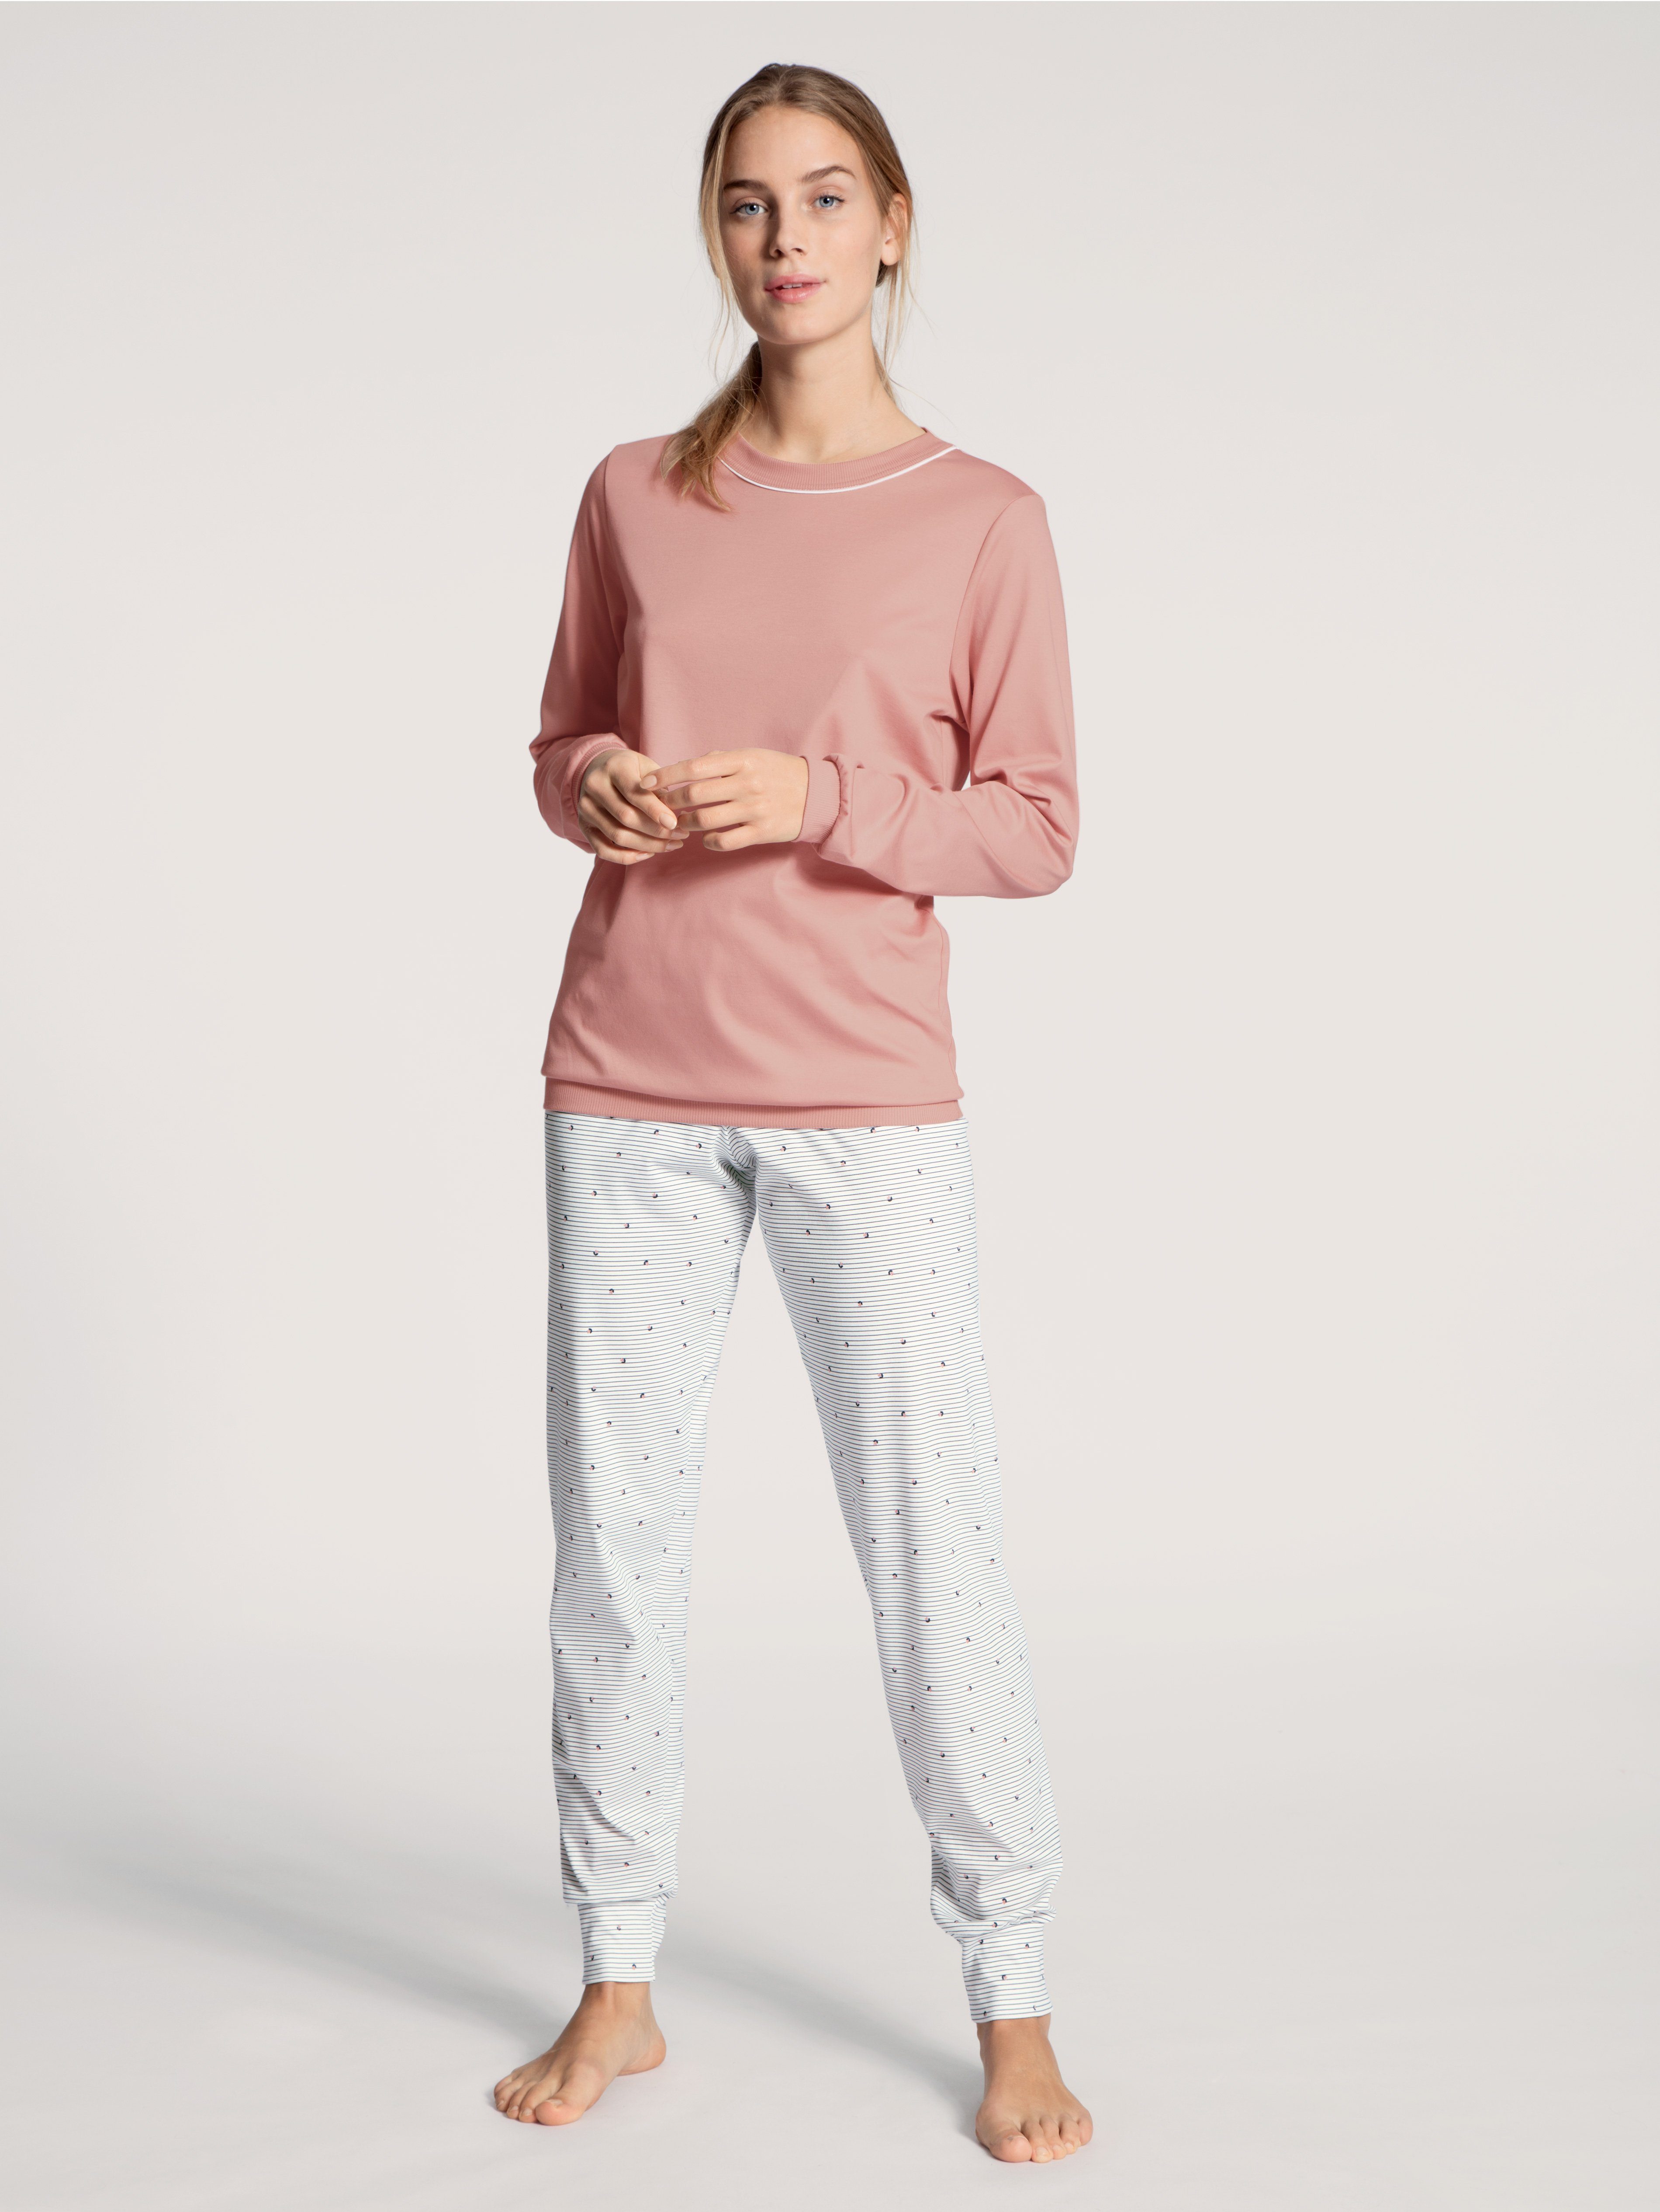 CALIDA Schlafanzug Sweet Dreams Bündchen-Pyjama, feine Streifen und kleine Blümchen auf der Hose rose bud